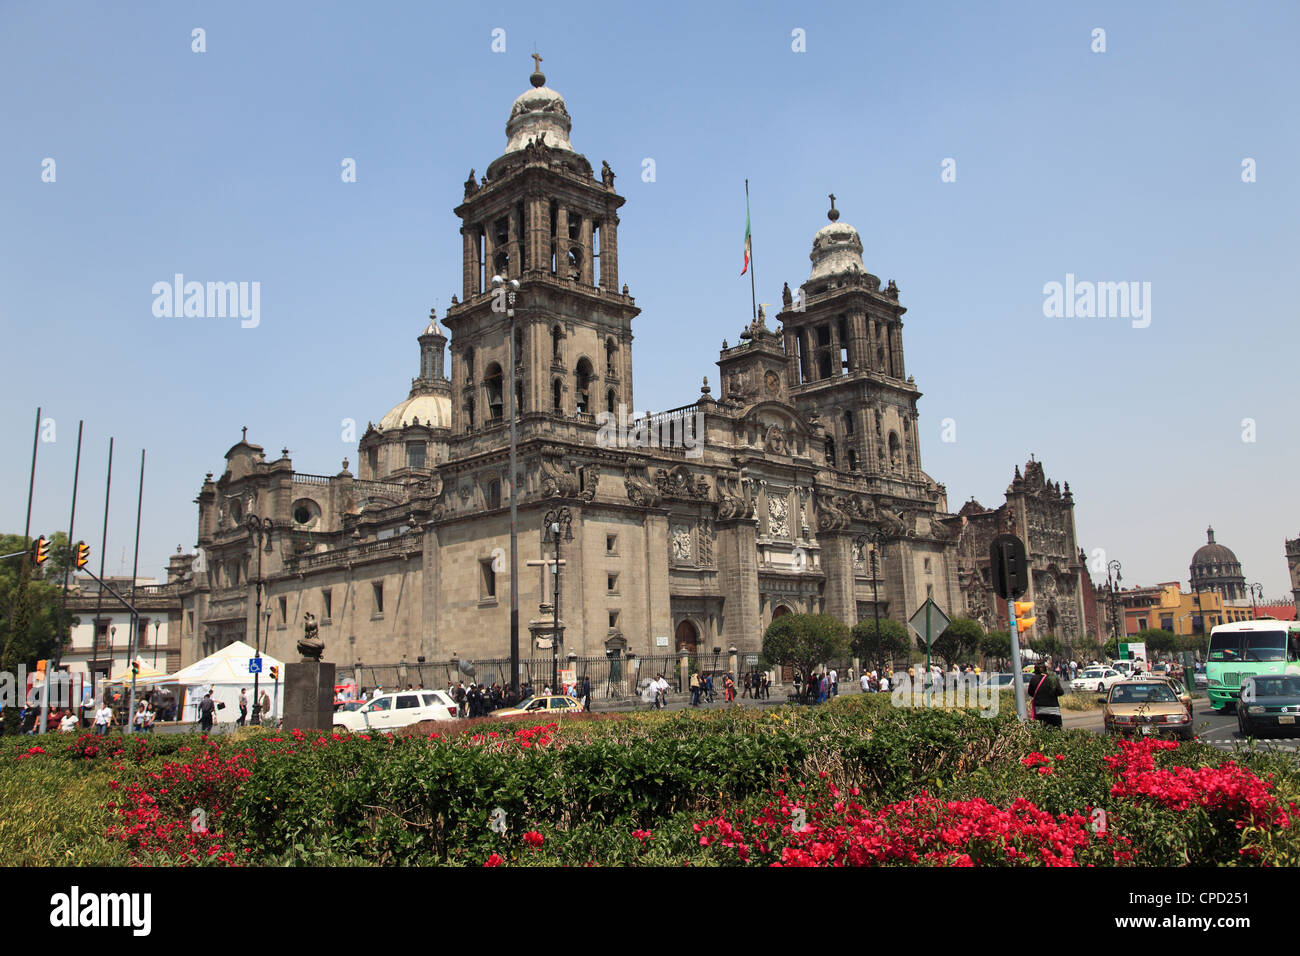 Metropolitan Cathedral, the largest church in Latin America, Zocalo, Plaza de la Constitucion, Mexico City, Mexico Stock Photo